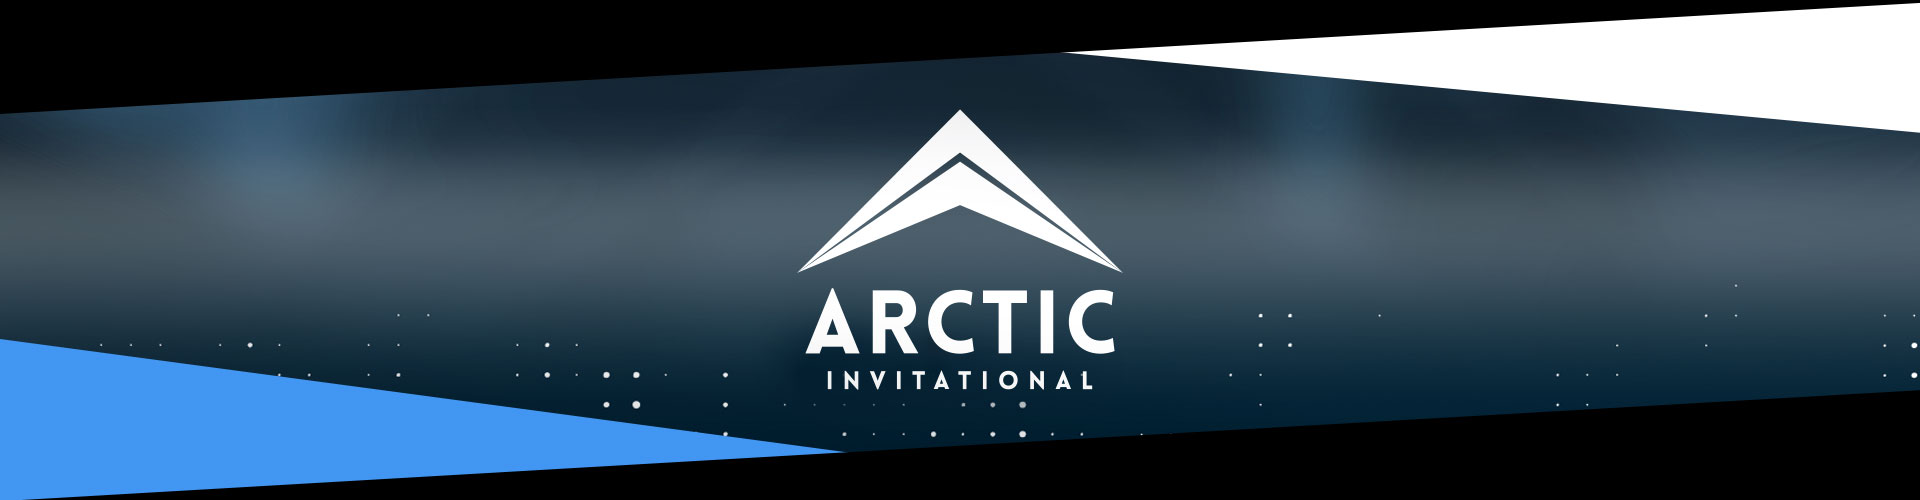 CS:GO - Arctic Invitational 2019